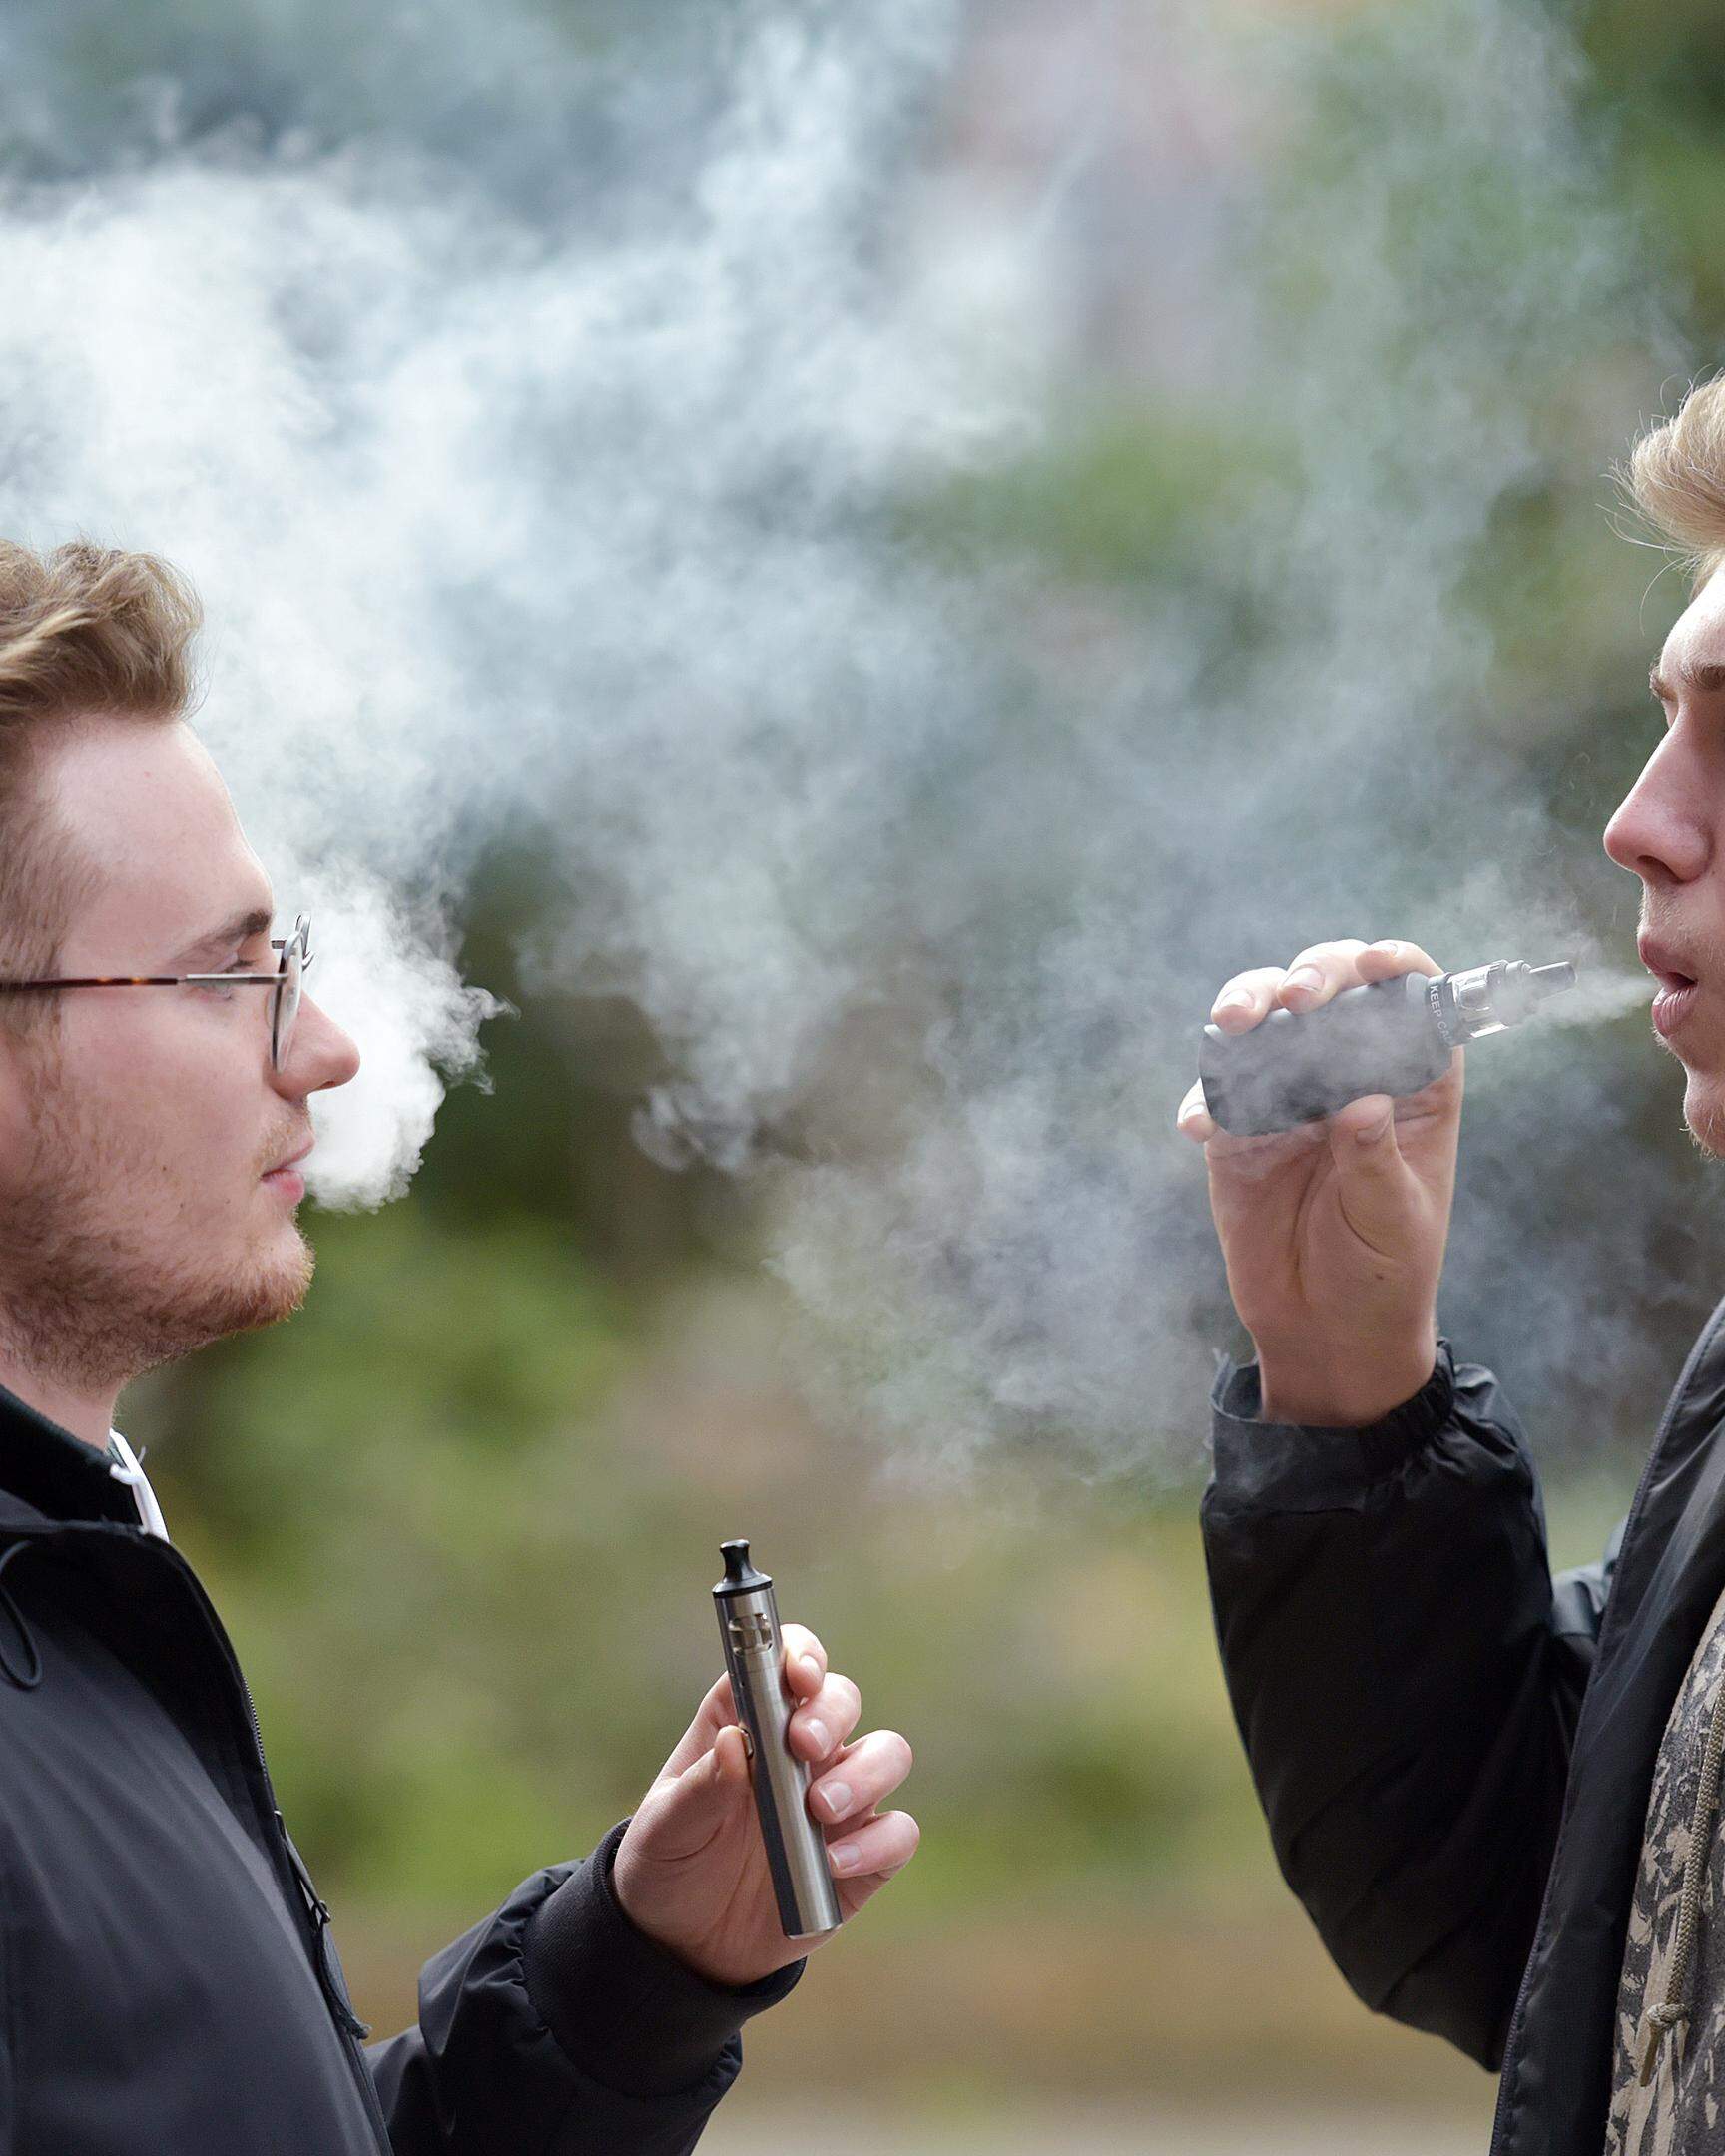 Großbritannien ist zwar kein typisches Raucherland. Doch soll ein neues Gesetz Rauchen massiv einschränken.